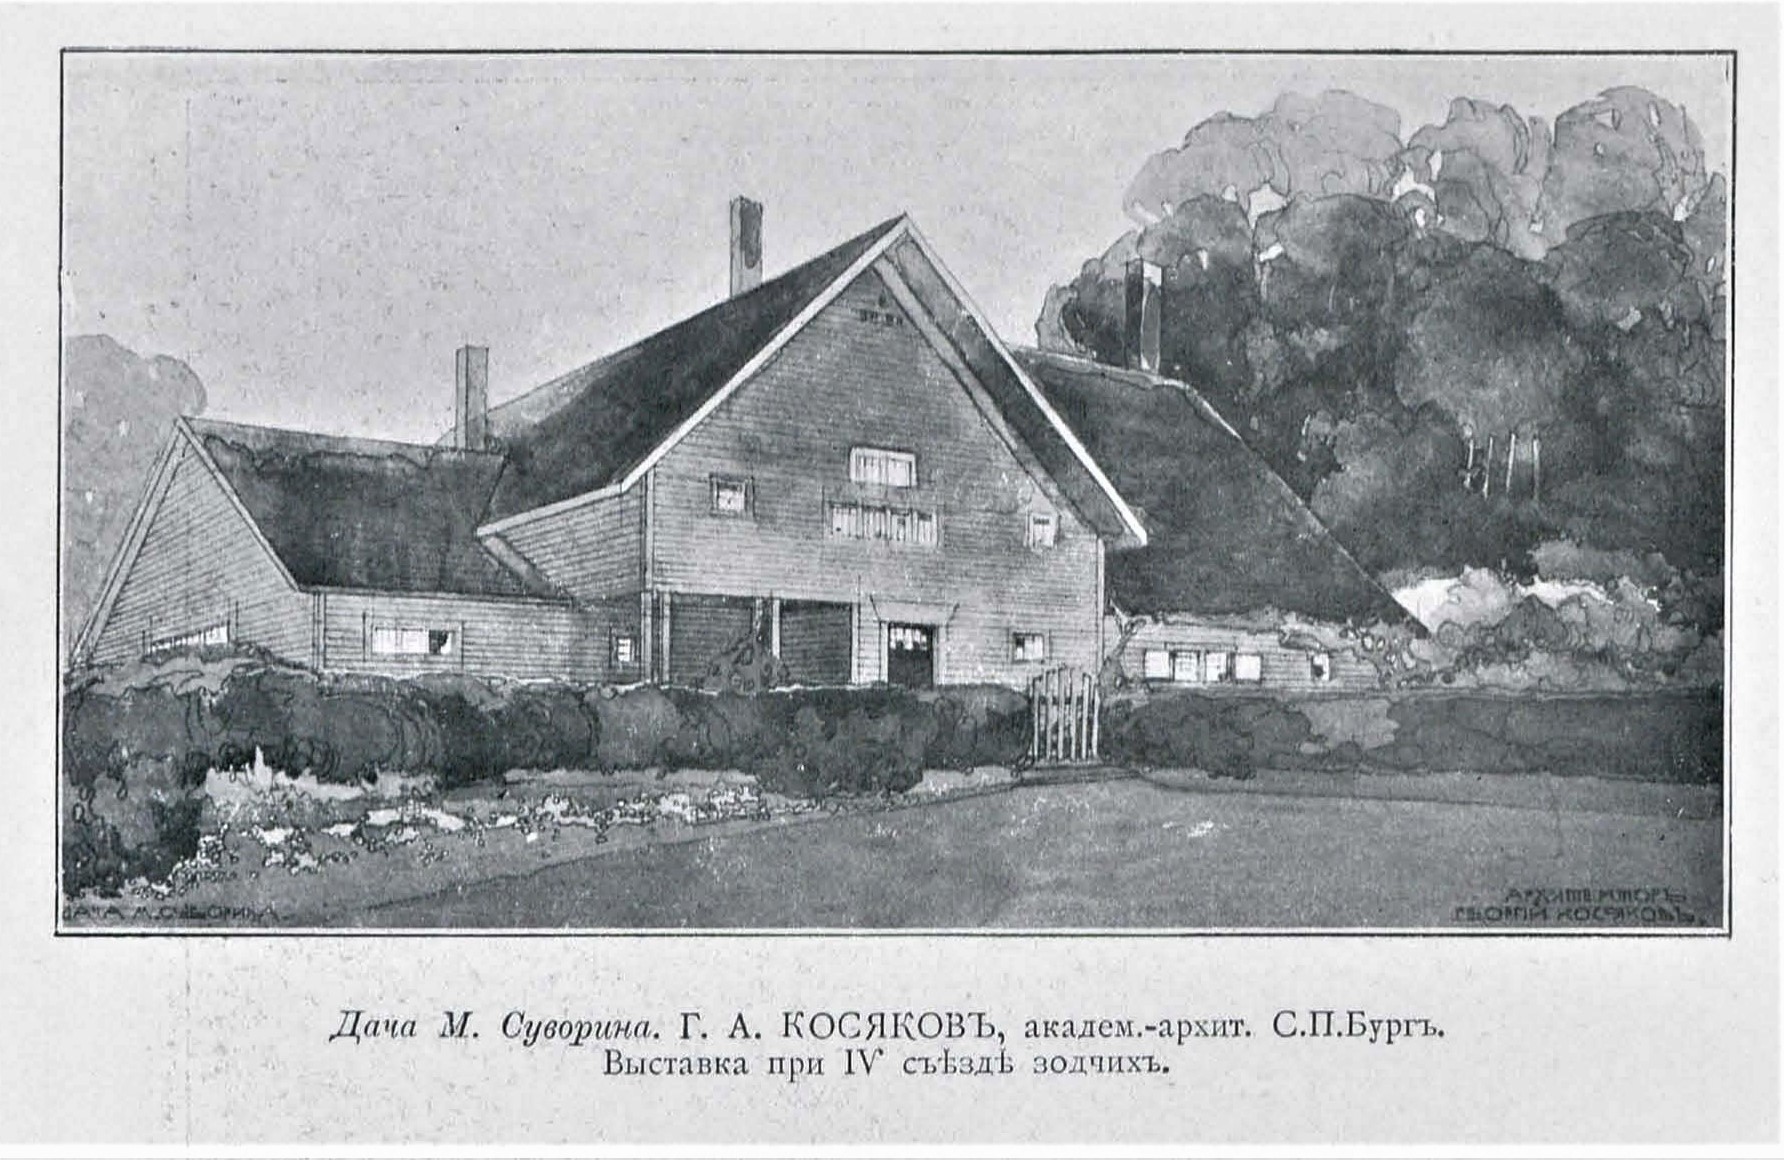 ezhegodnik-obshchestva-arhitektorov-hudozhnikov-06-1911-страницы-104.jpg